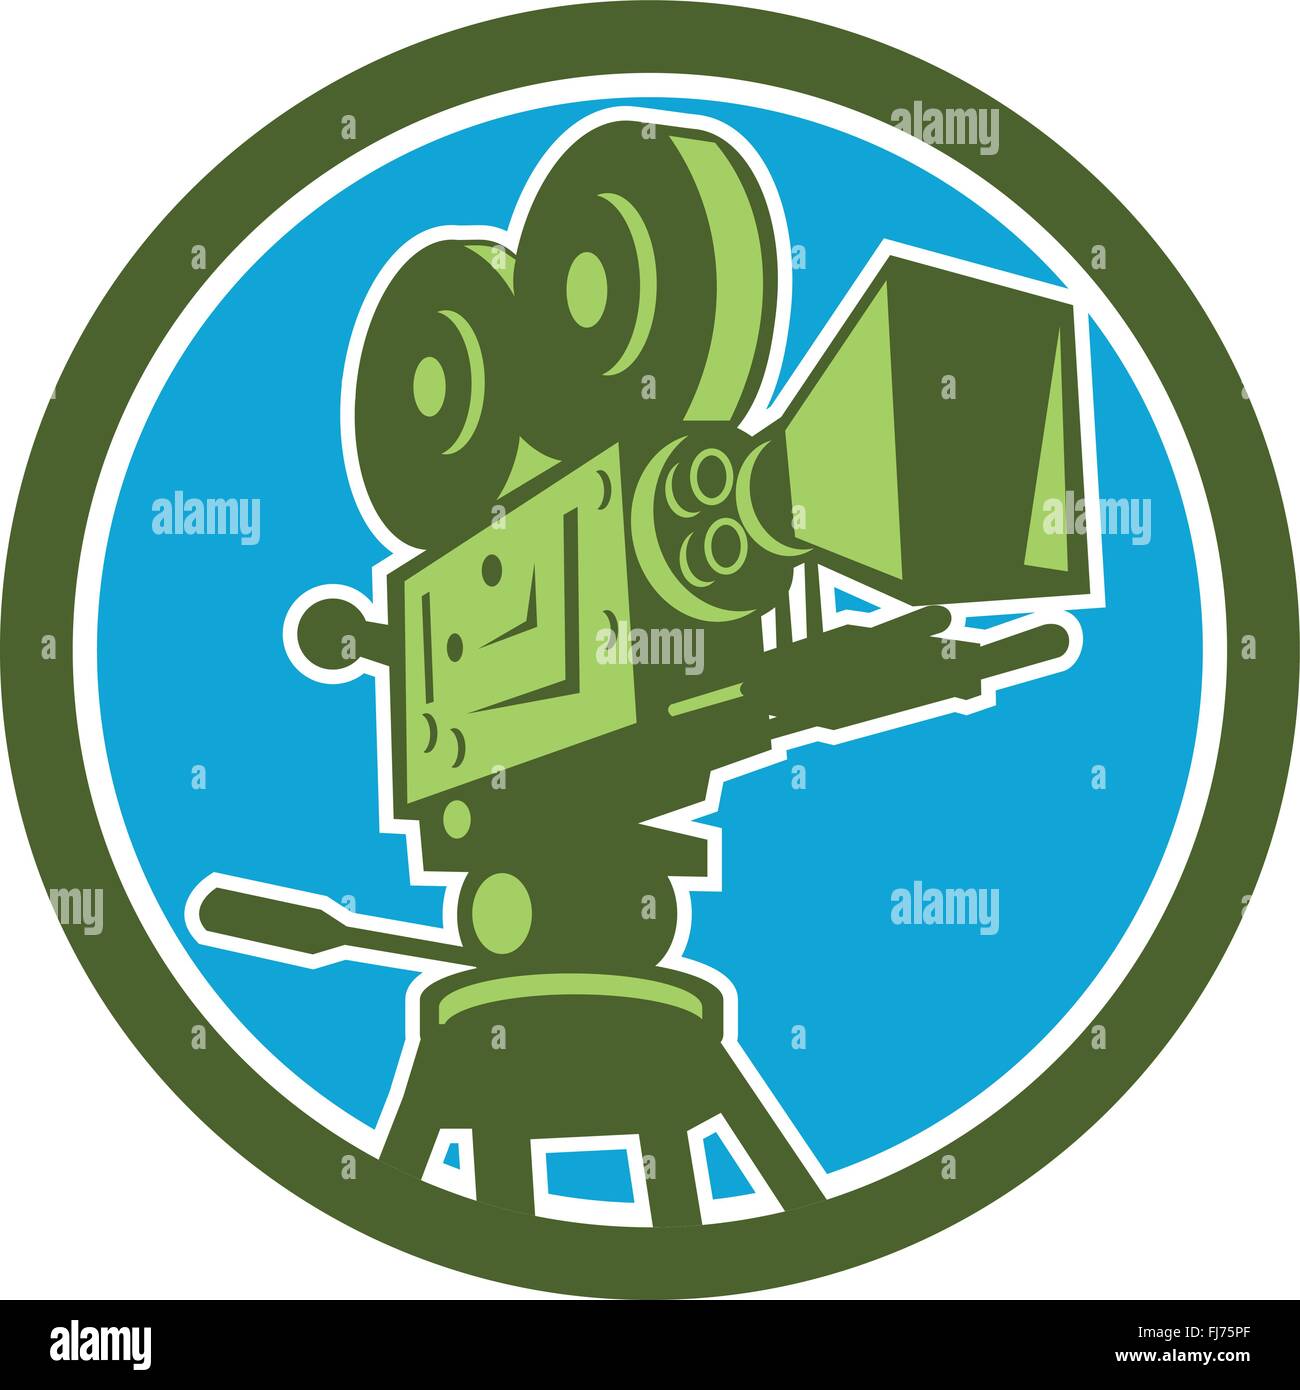 Illustrazione di un vintage film motion picture fotocamera vista dal basso angolo impostato all'interno del cerchio su sfondo isolato fatto in stile retrò. Illustrazione Vettoriale